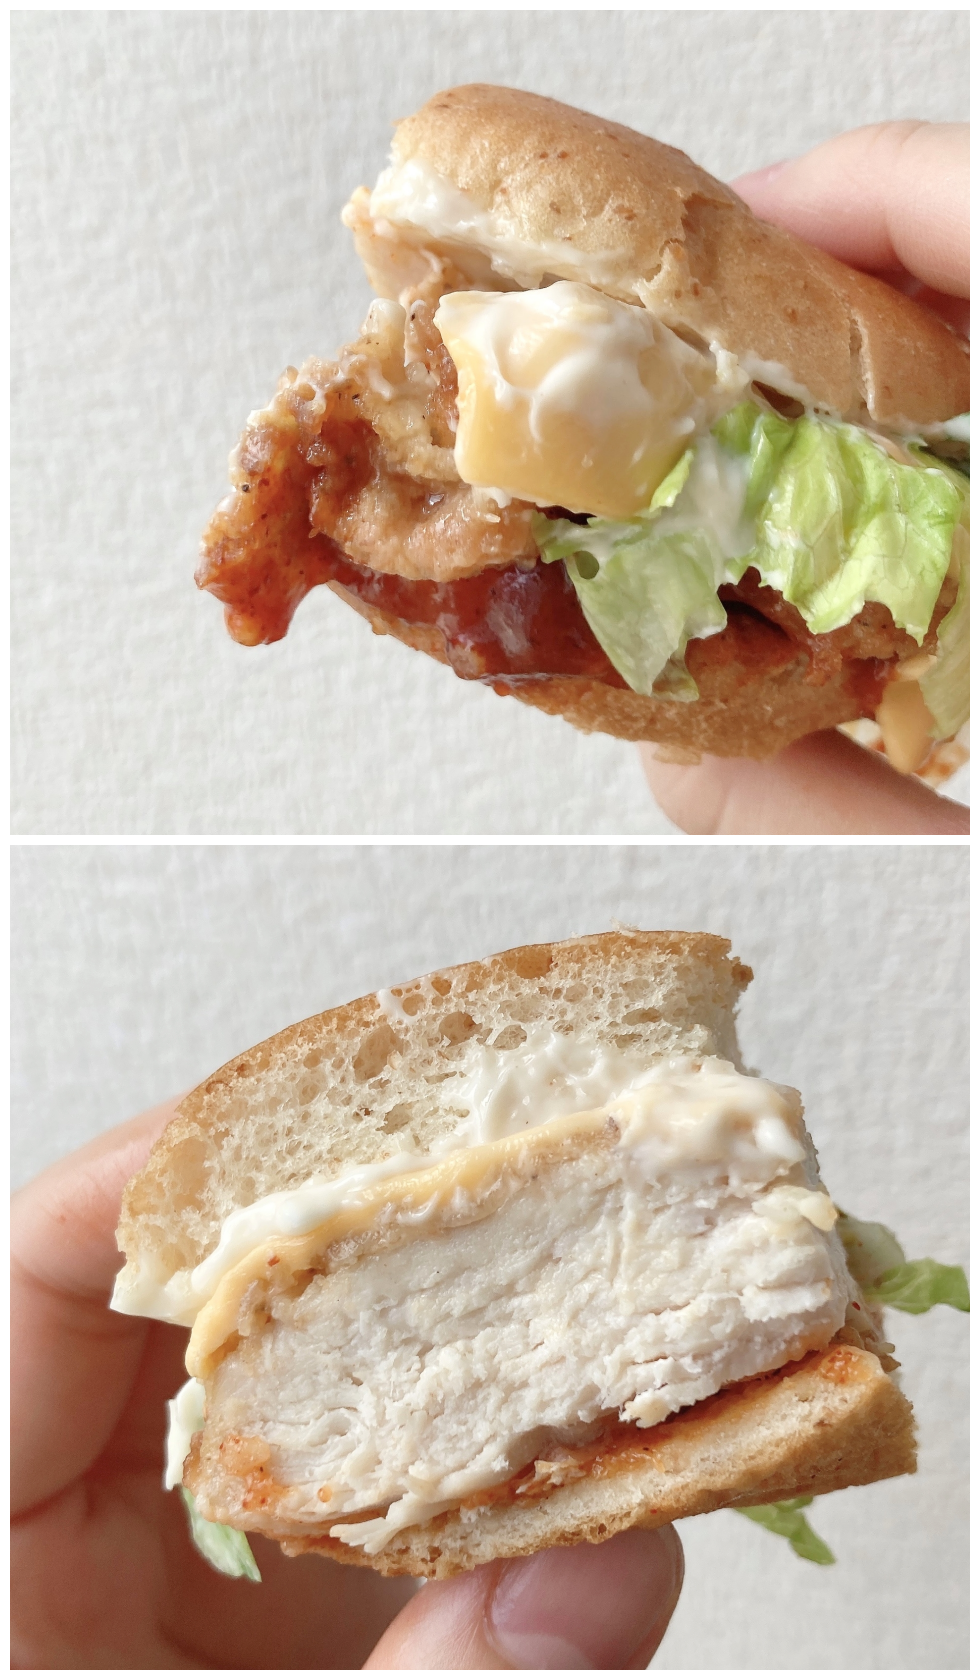 KFC（ケンタッキー・フライド・チキン）のオススメのバーガー「辛旨バッファローチキンバーガー」